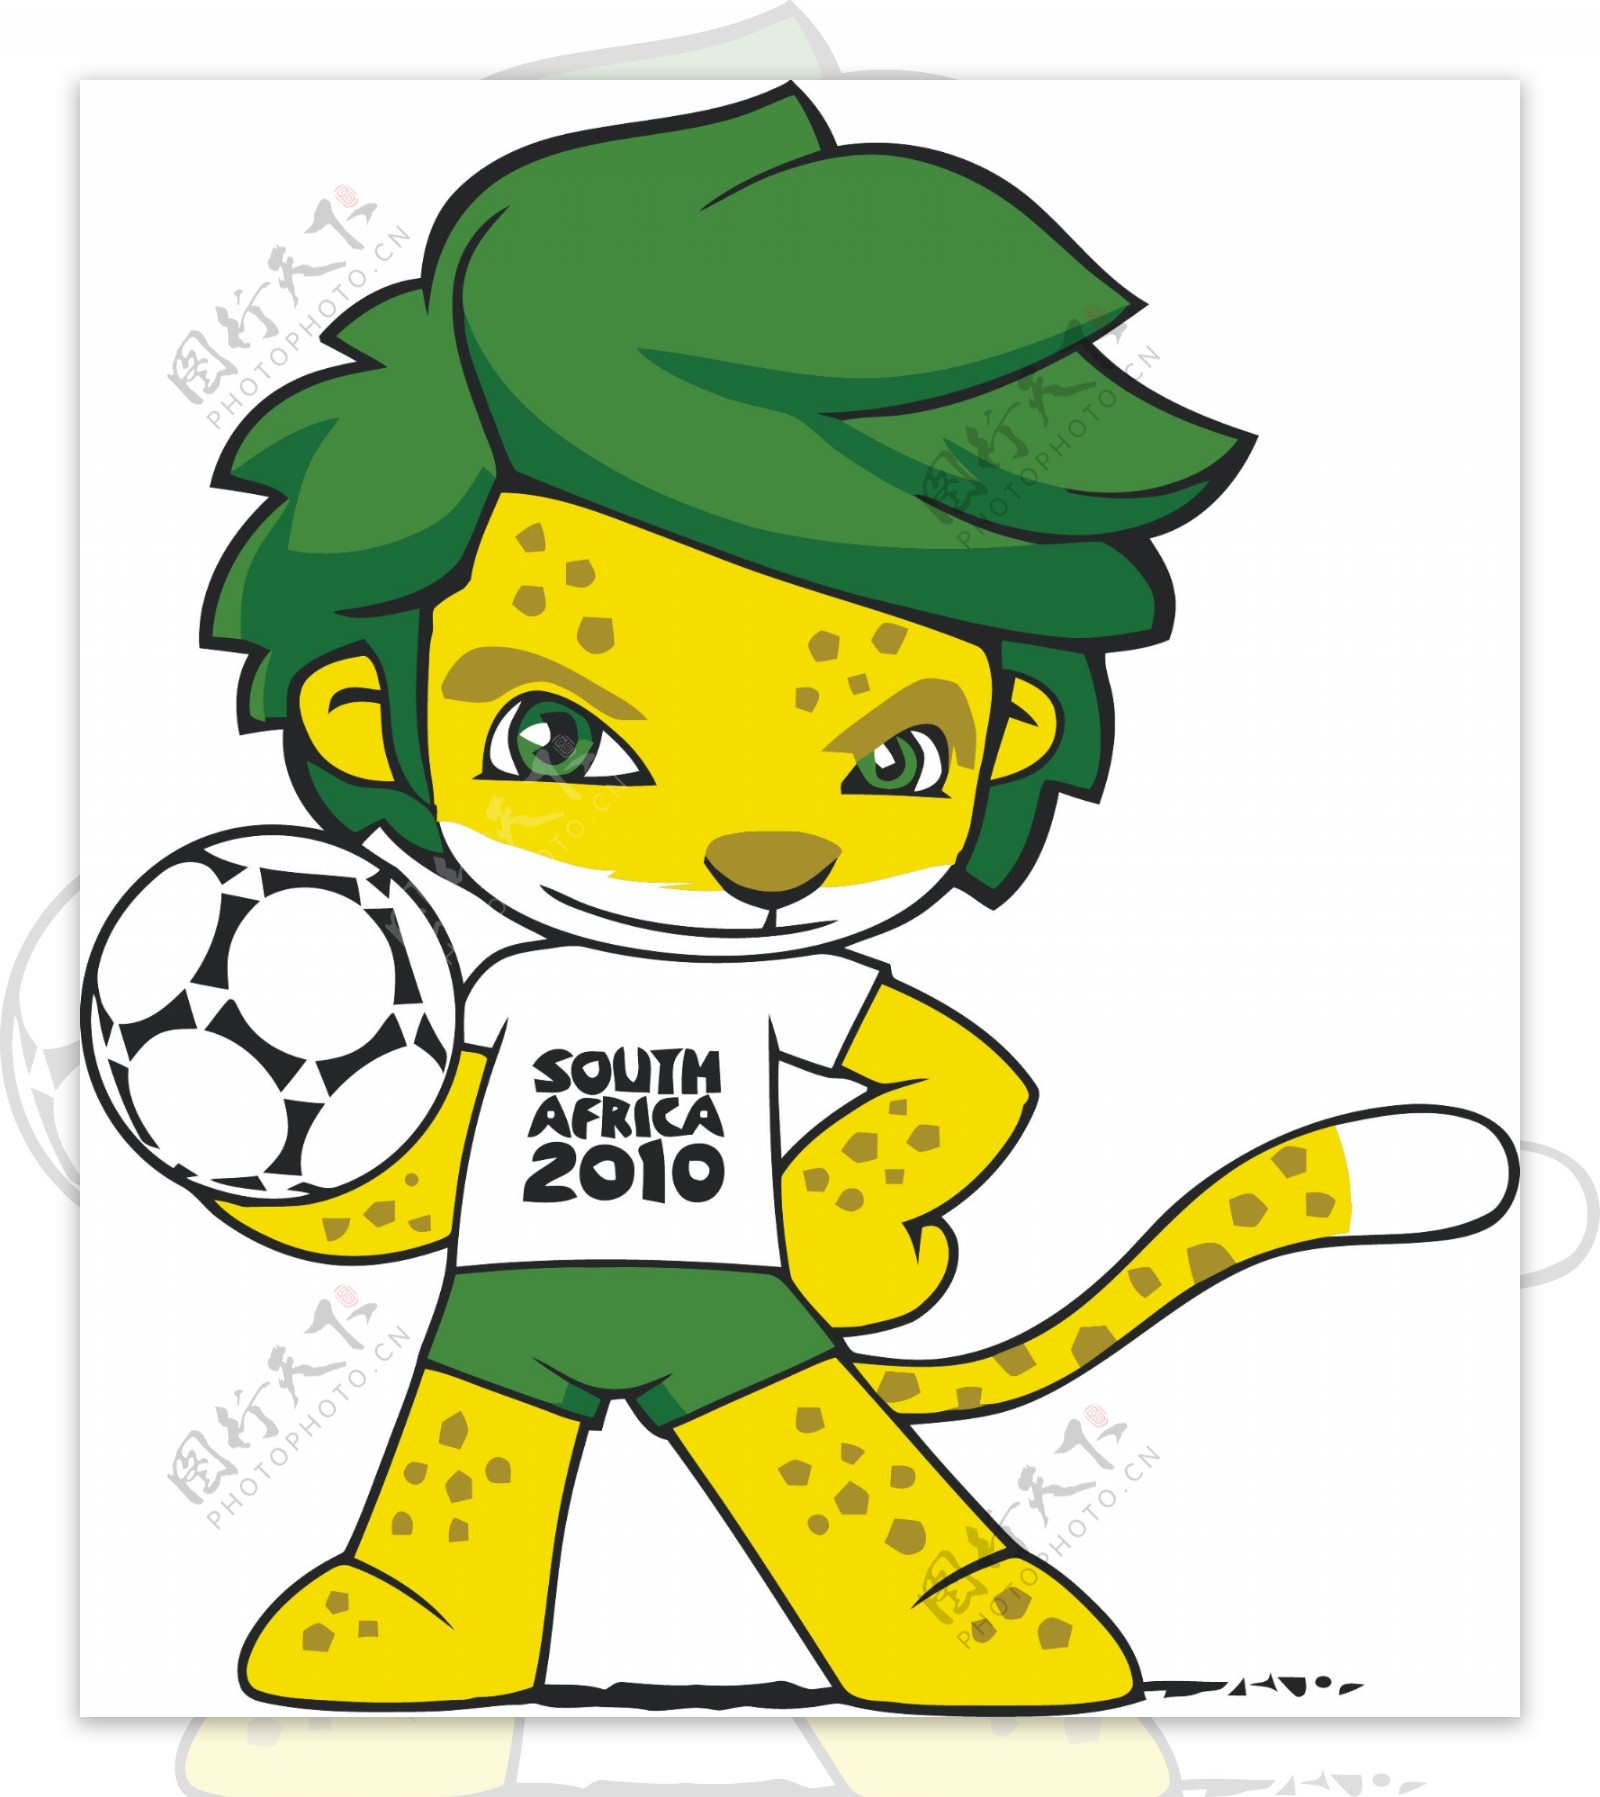 2010南非世界杯吉祥物扎库米矢量Adobeilustrator设计